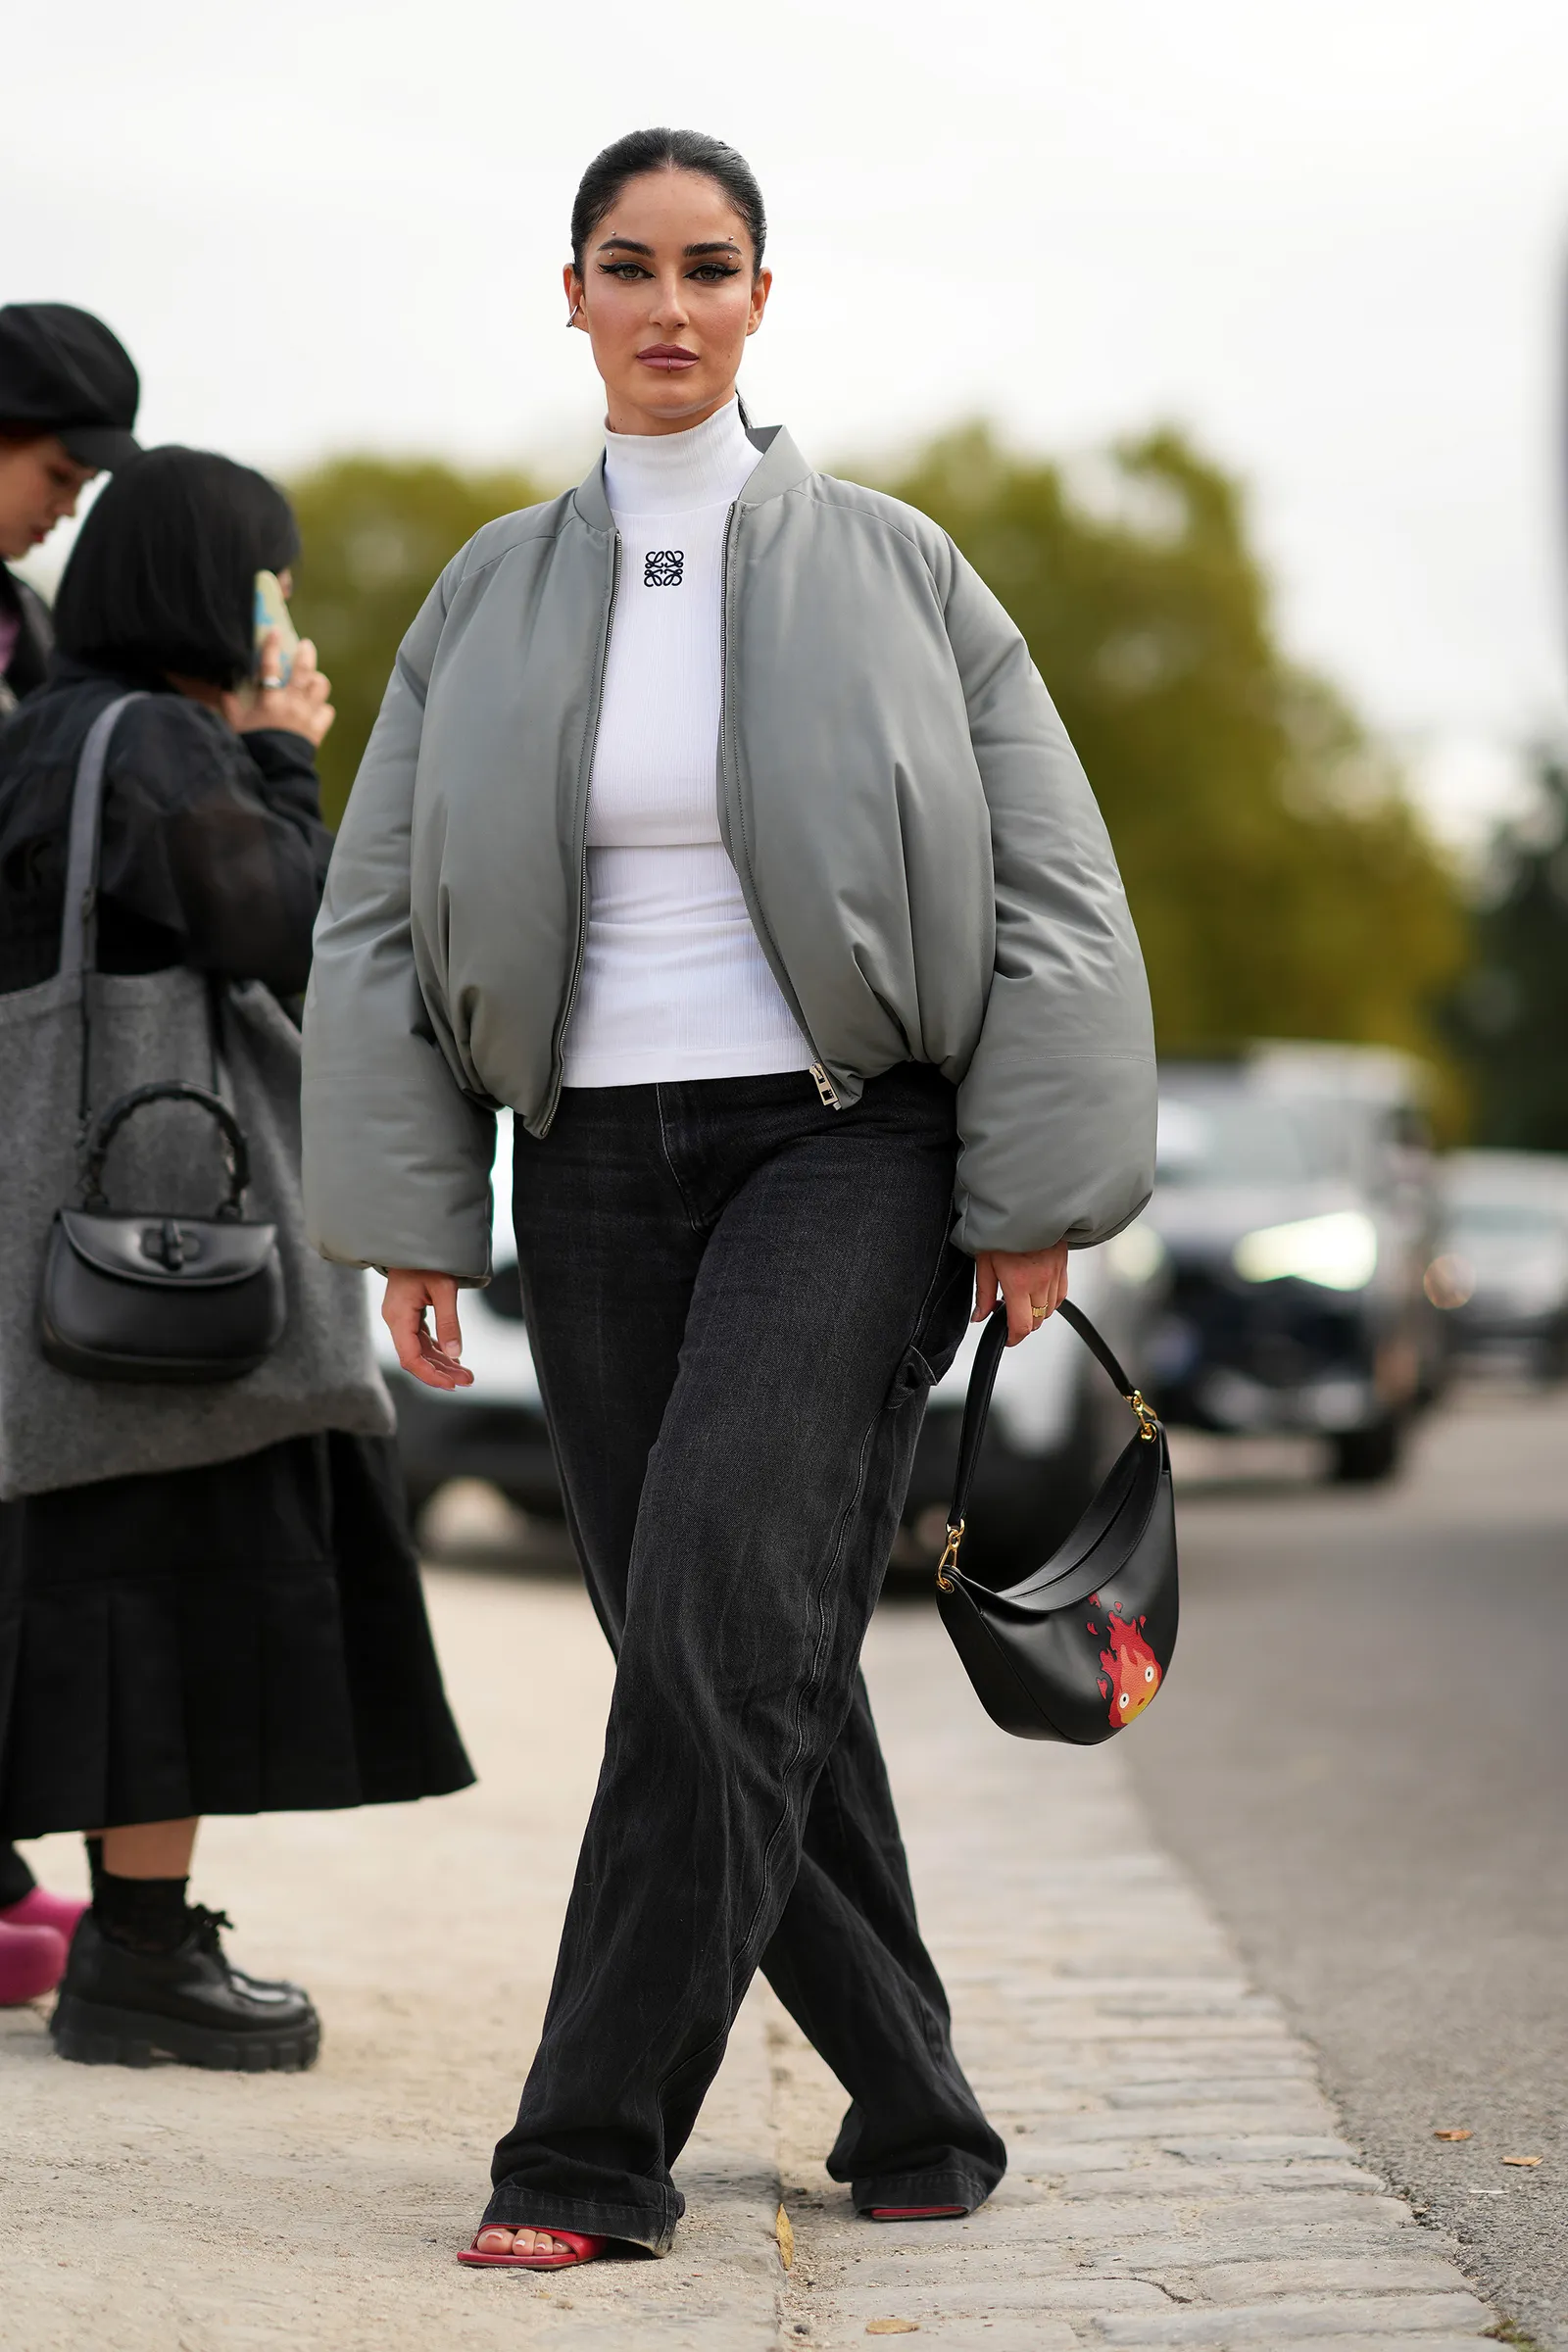 Kurtki bomberki z jeansami baggy to gwarancja modnego wyglądu. (Fot. Getty Images)